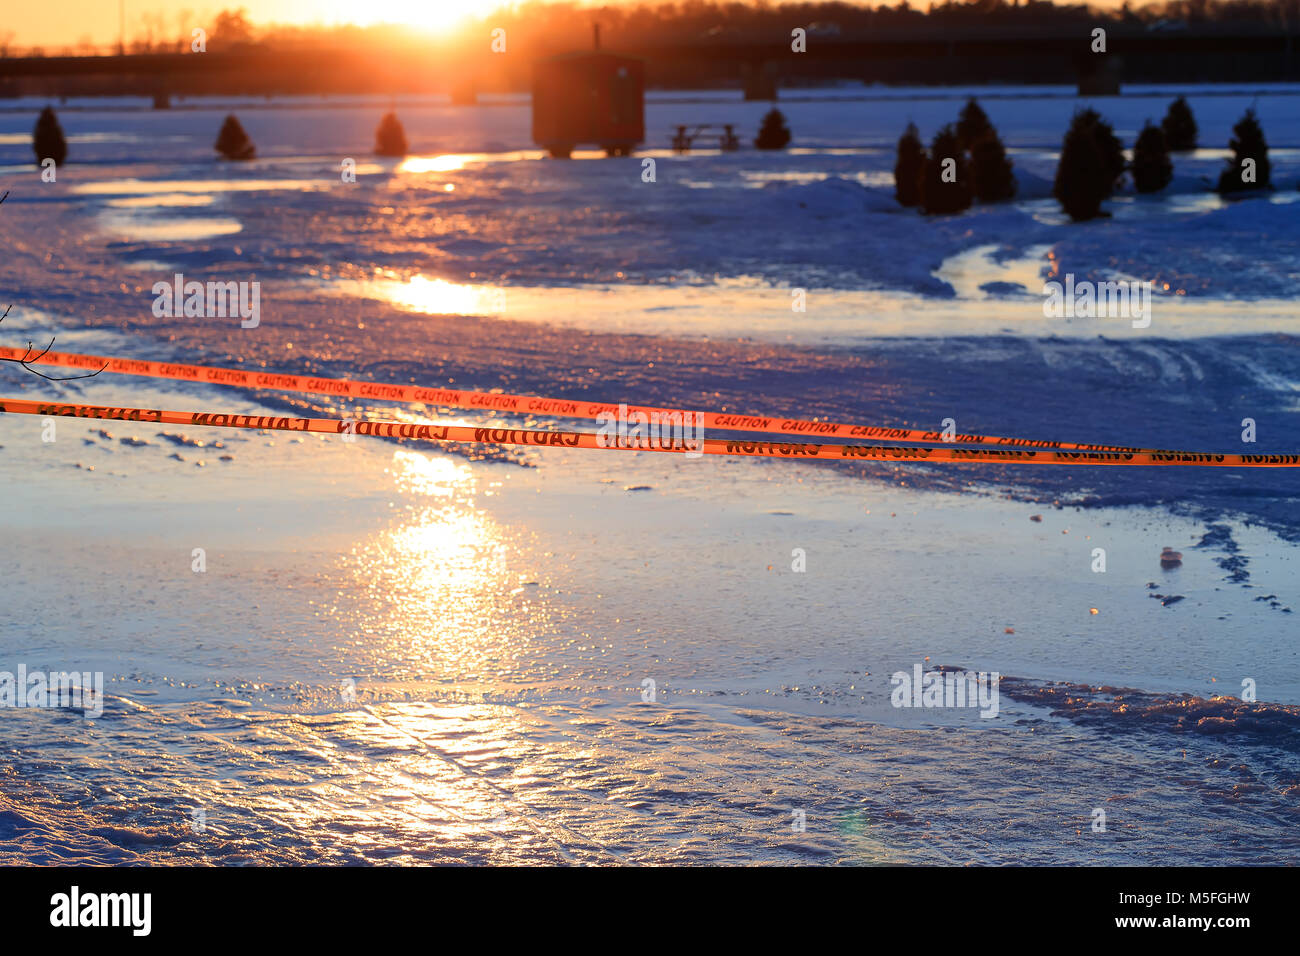 Warnhinweis für dünnes Eis im Fischerdorf installiert auf dem See an der Gefahr des Ertrinkens. Achtung oder Vorsicht Zeichen von ertrinken, gefrorenen See. Stockfoto